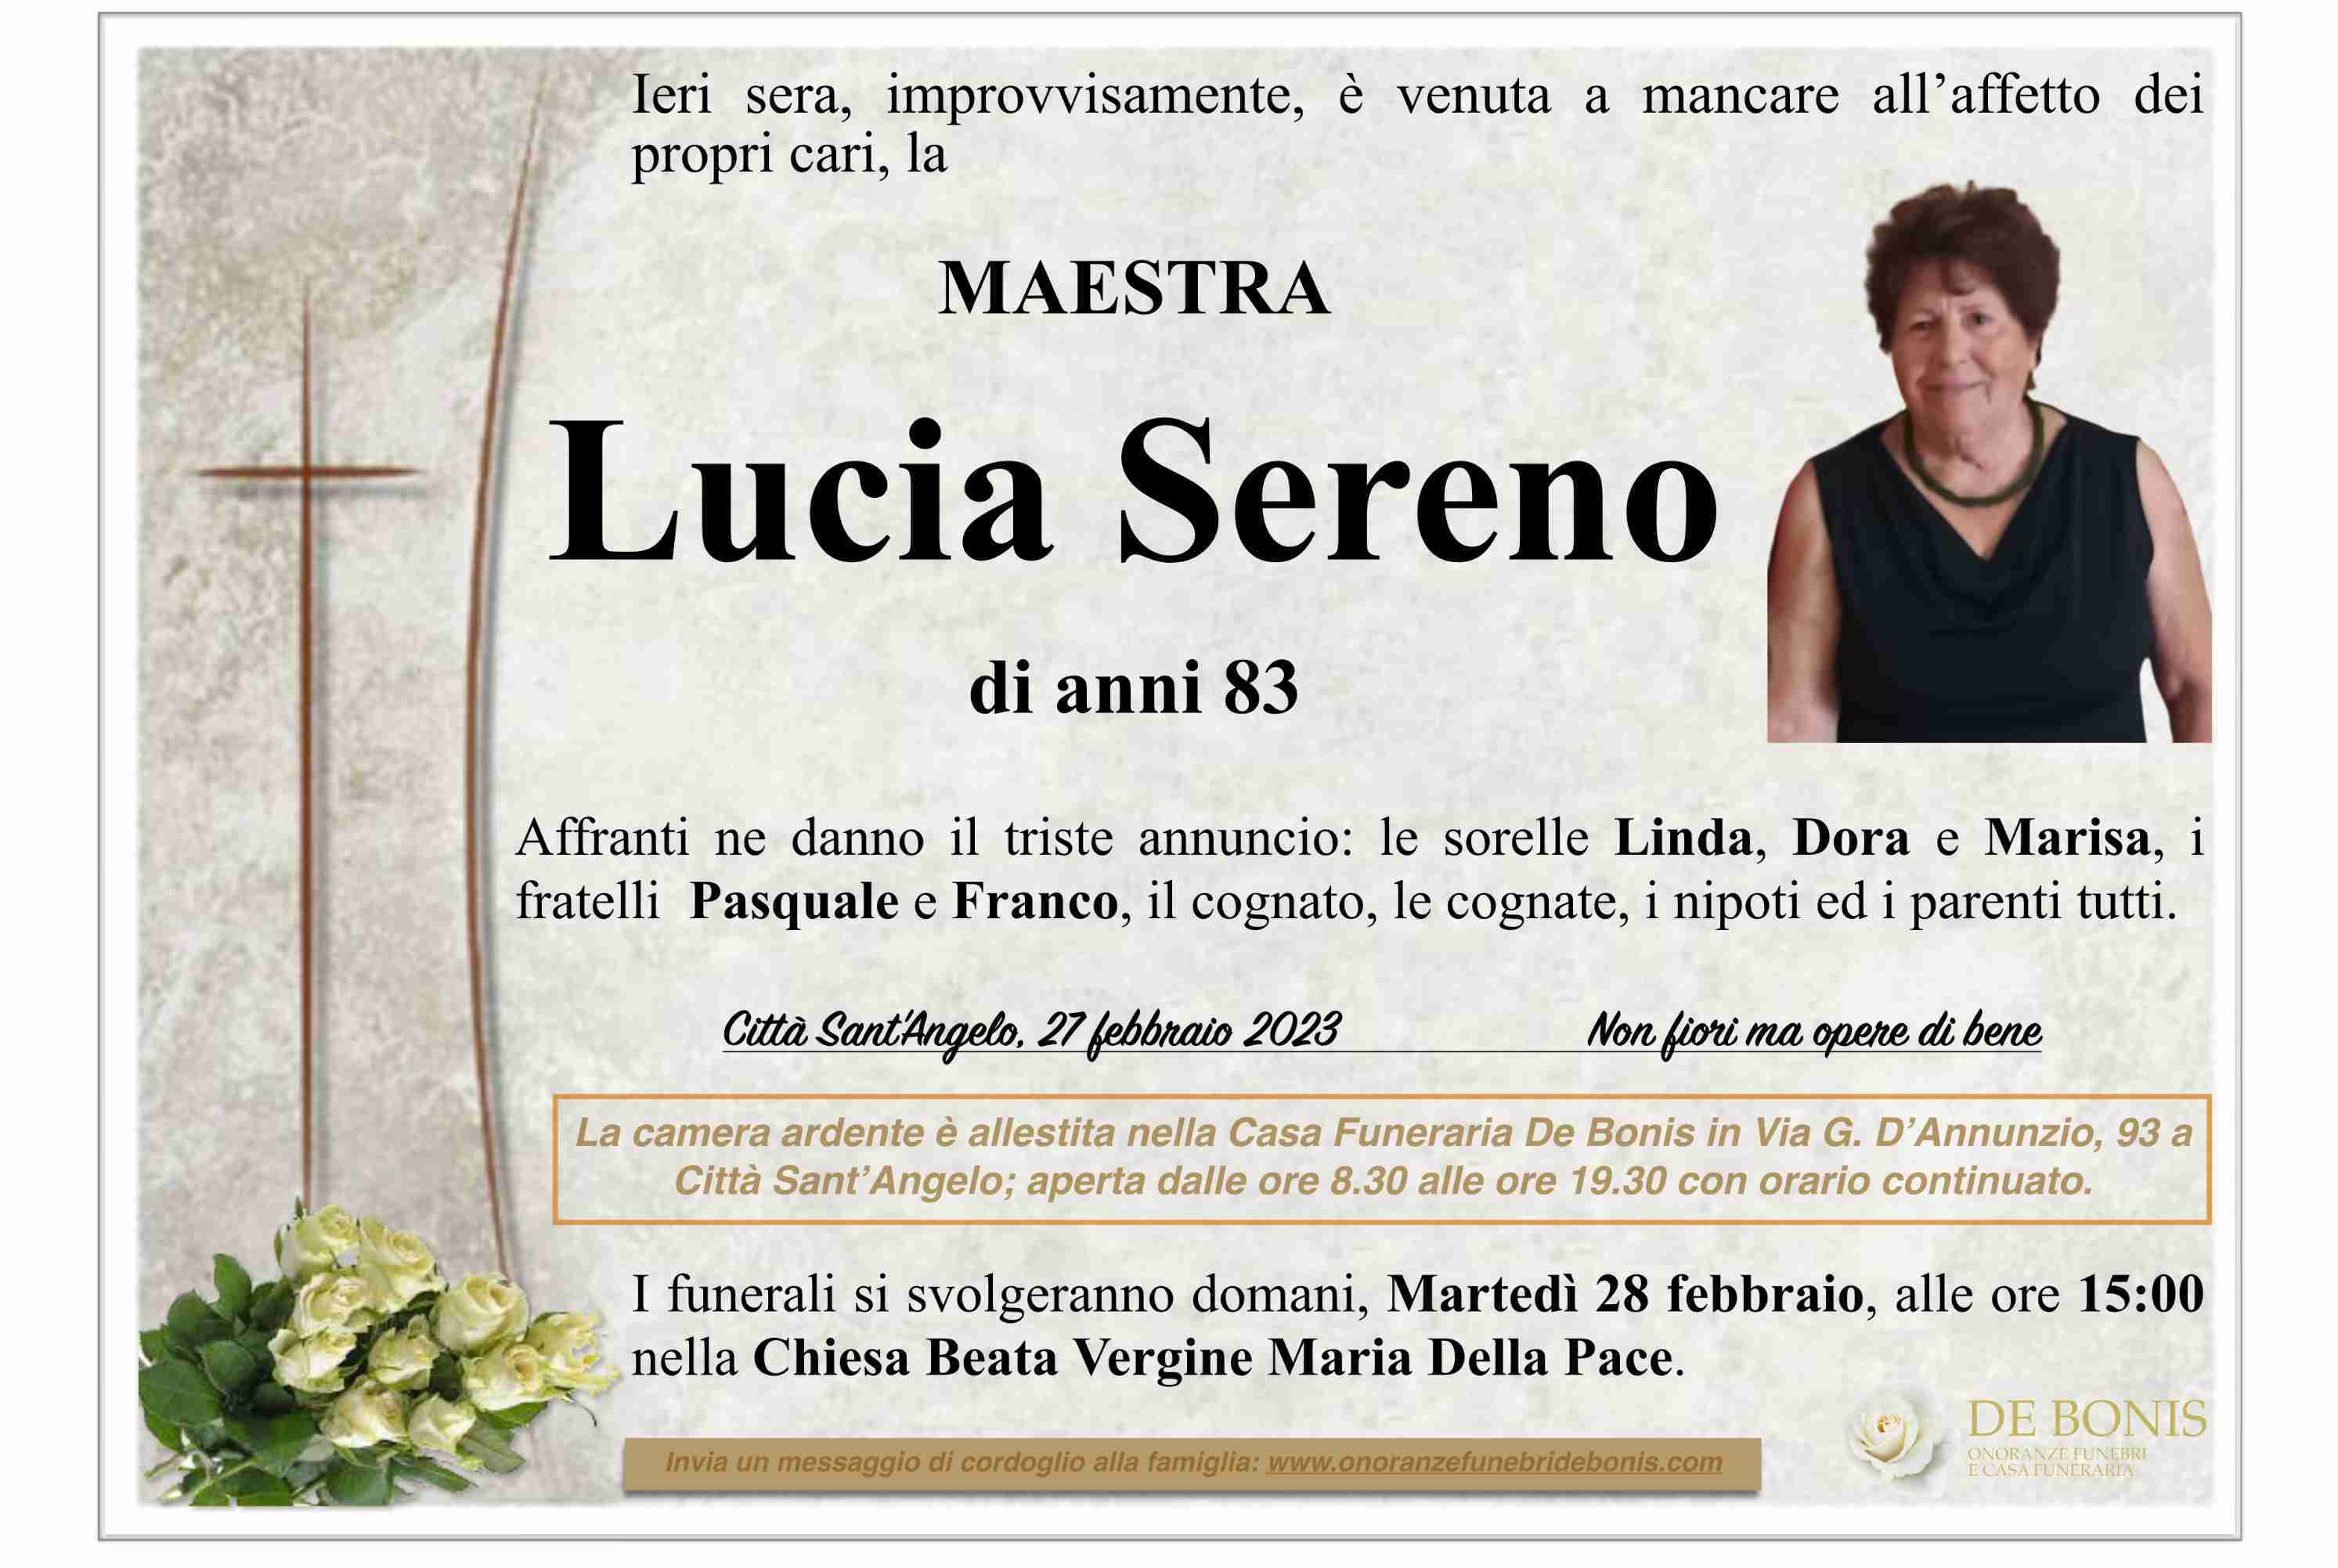 Lucia Sereno